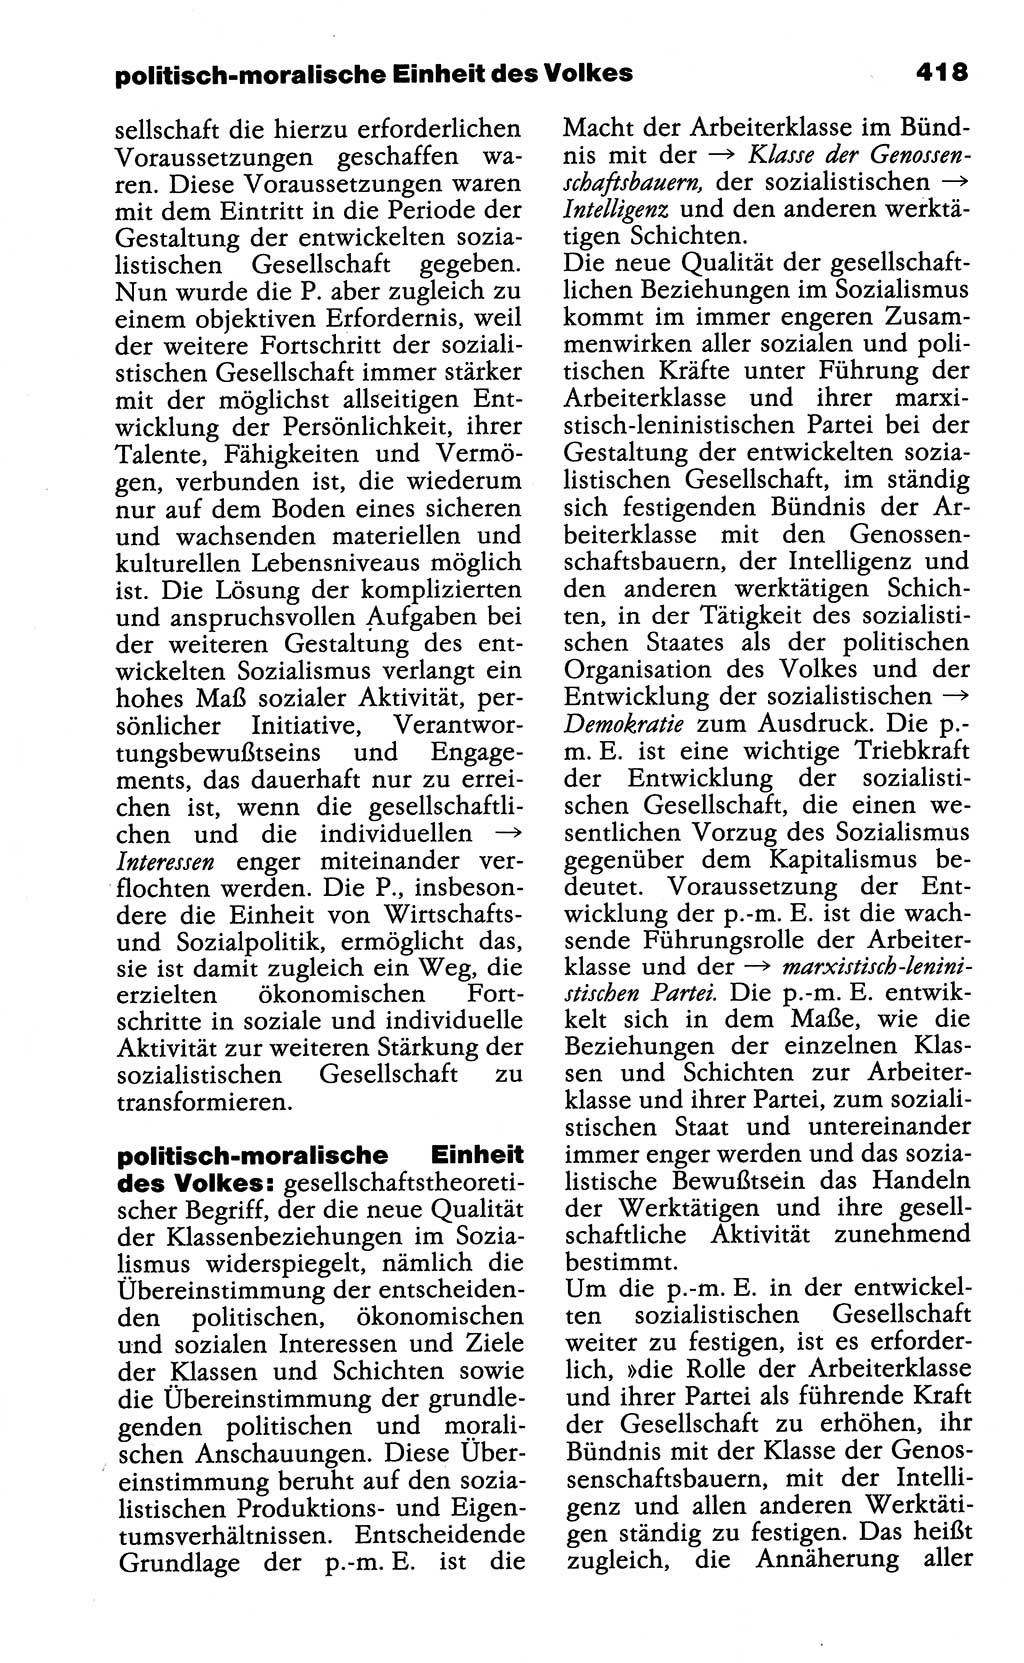 Wörterbuch der marxistisch-leninistischen Philosophie [Deutsche Demokratische Republik (DDR)] 1985, Seite 418 (Wb. ML Phil. DDR 1985, S. 418)